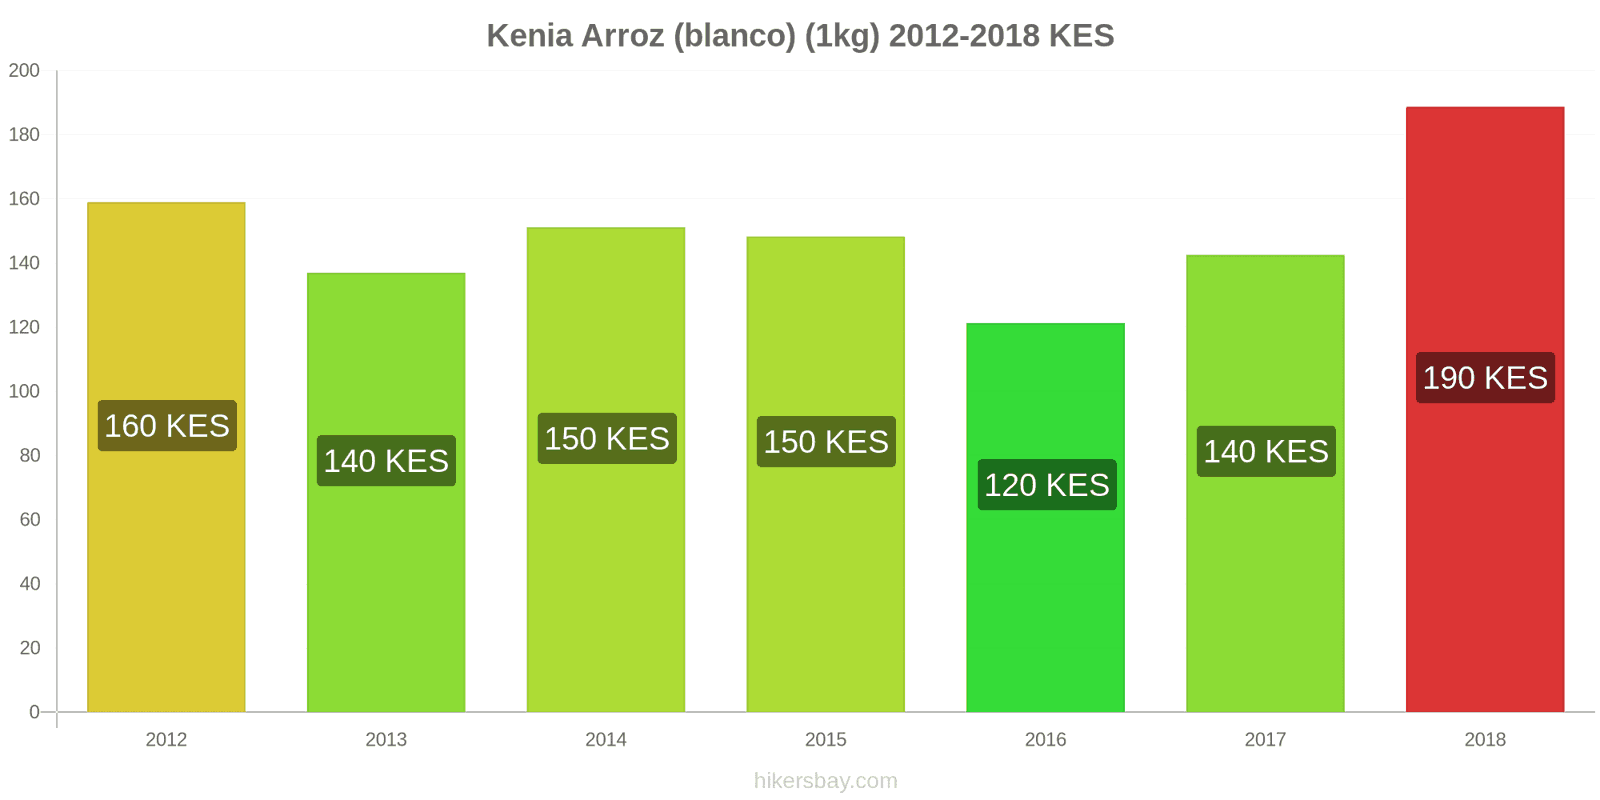 Kenia cambios de precios Kilo de arroz blanco hikersbay.com